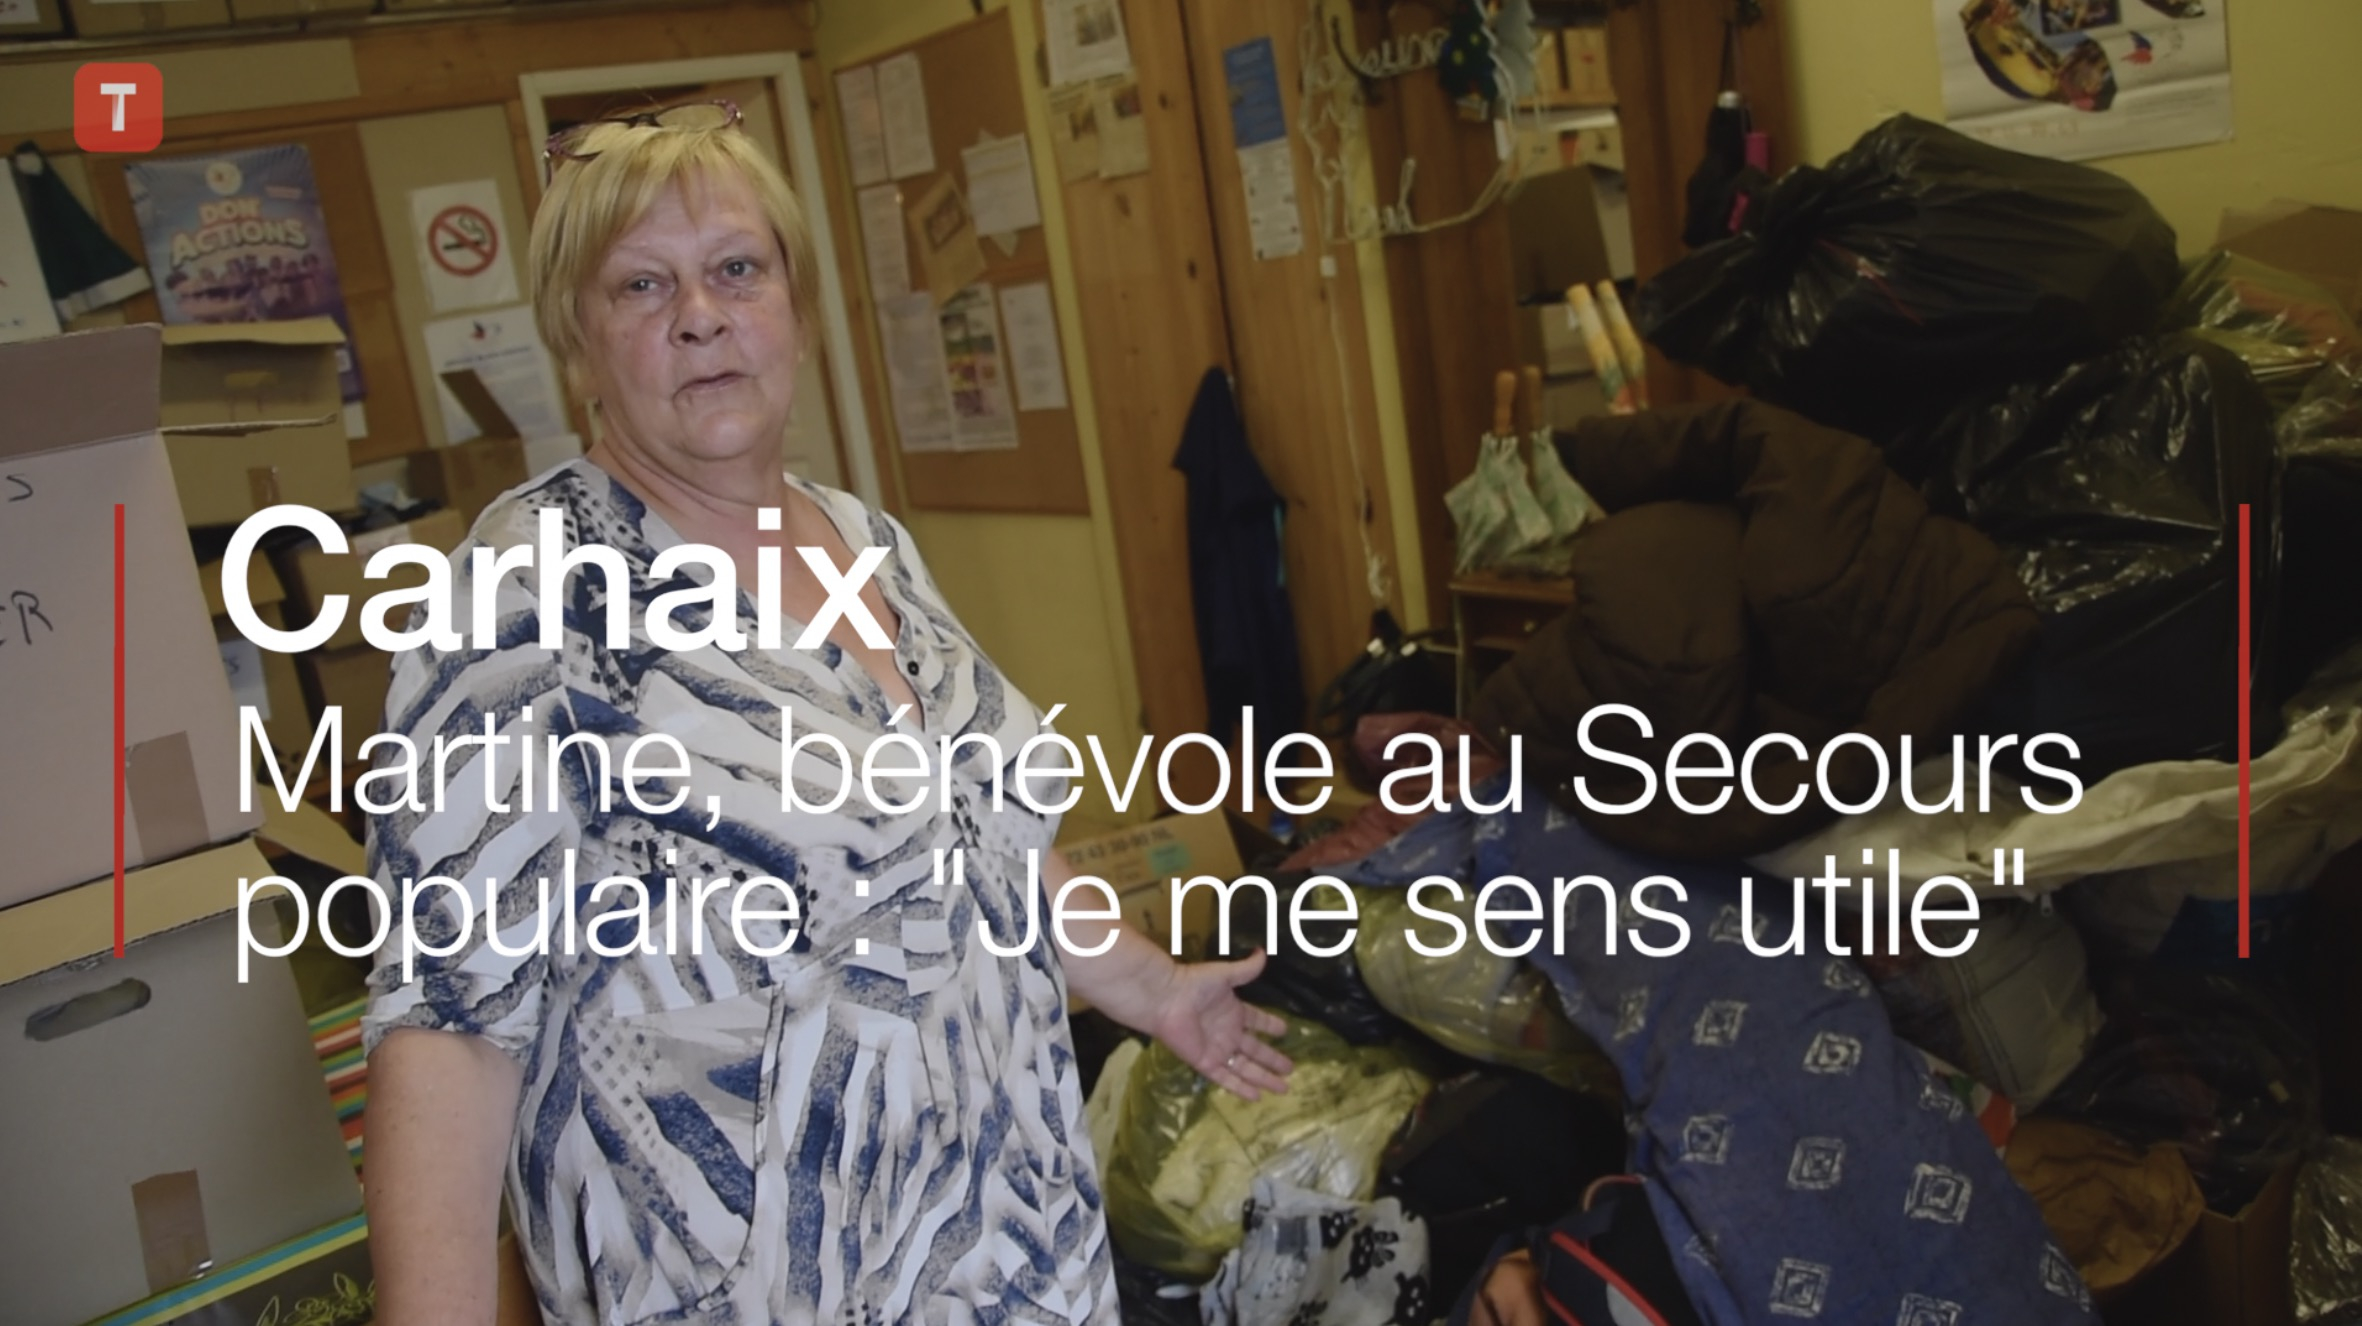 Carhaix. Martine, bénévole au Secours populaire : "Je me sens utile" (Le Télégramme)